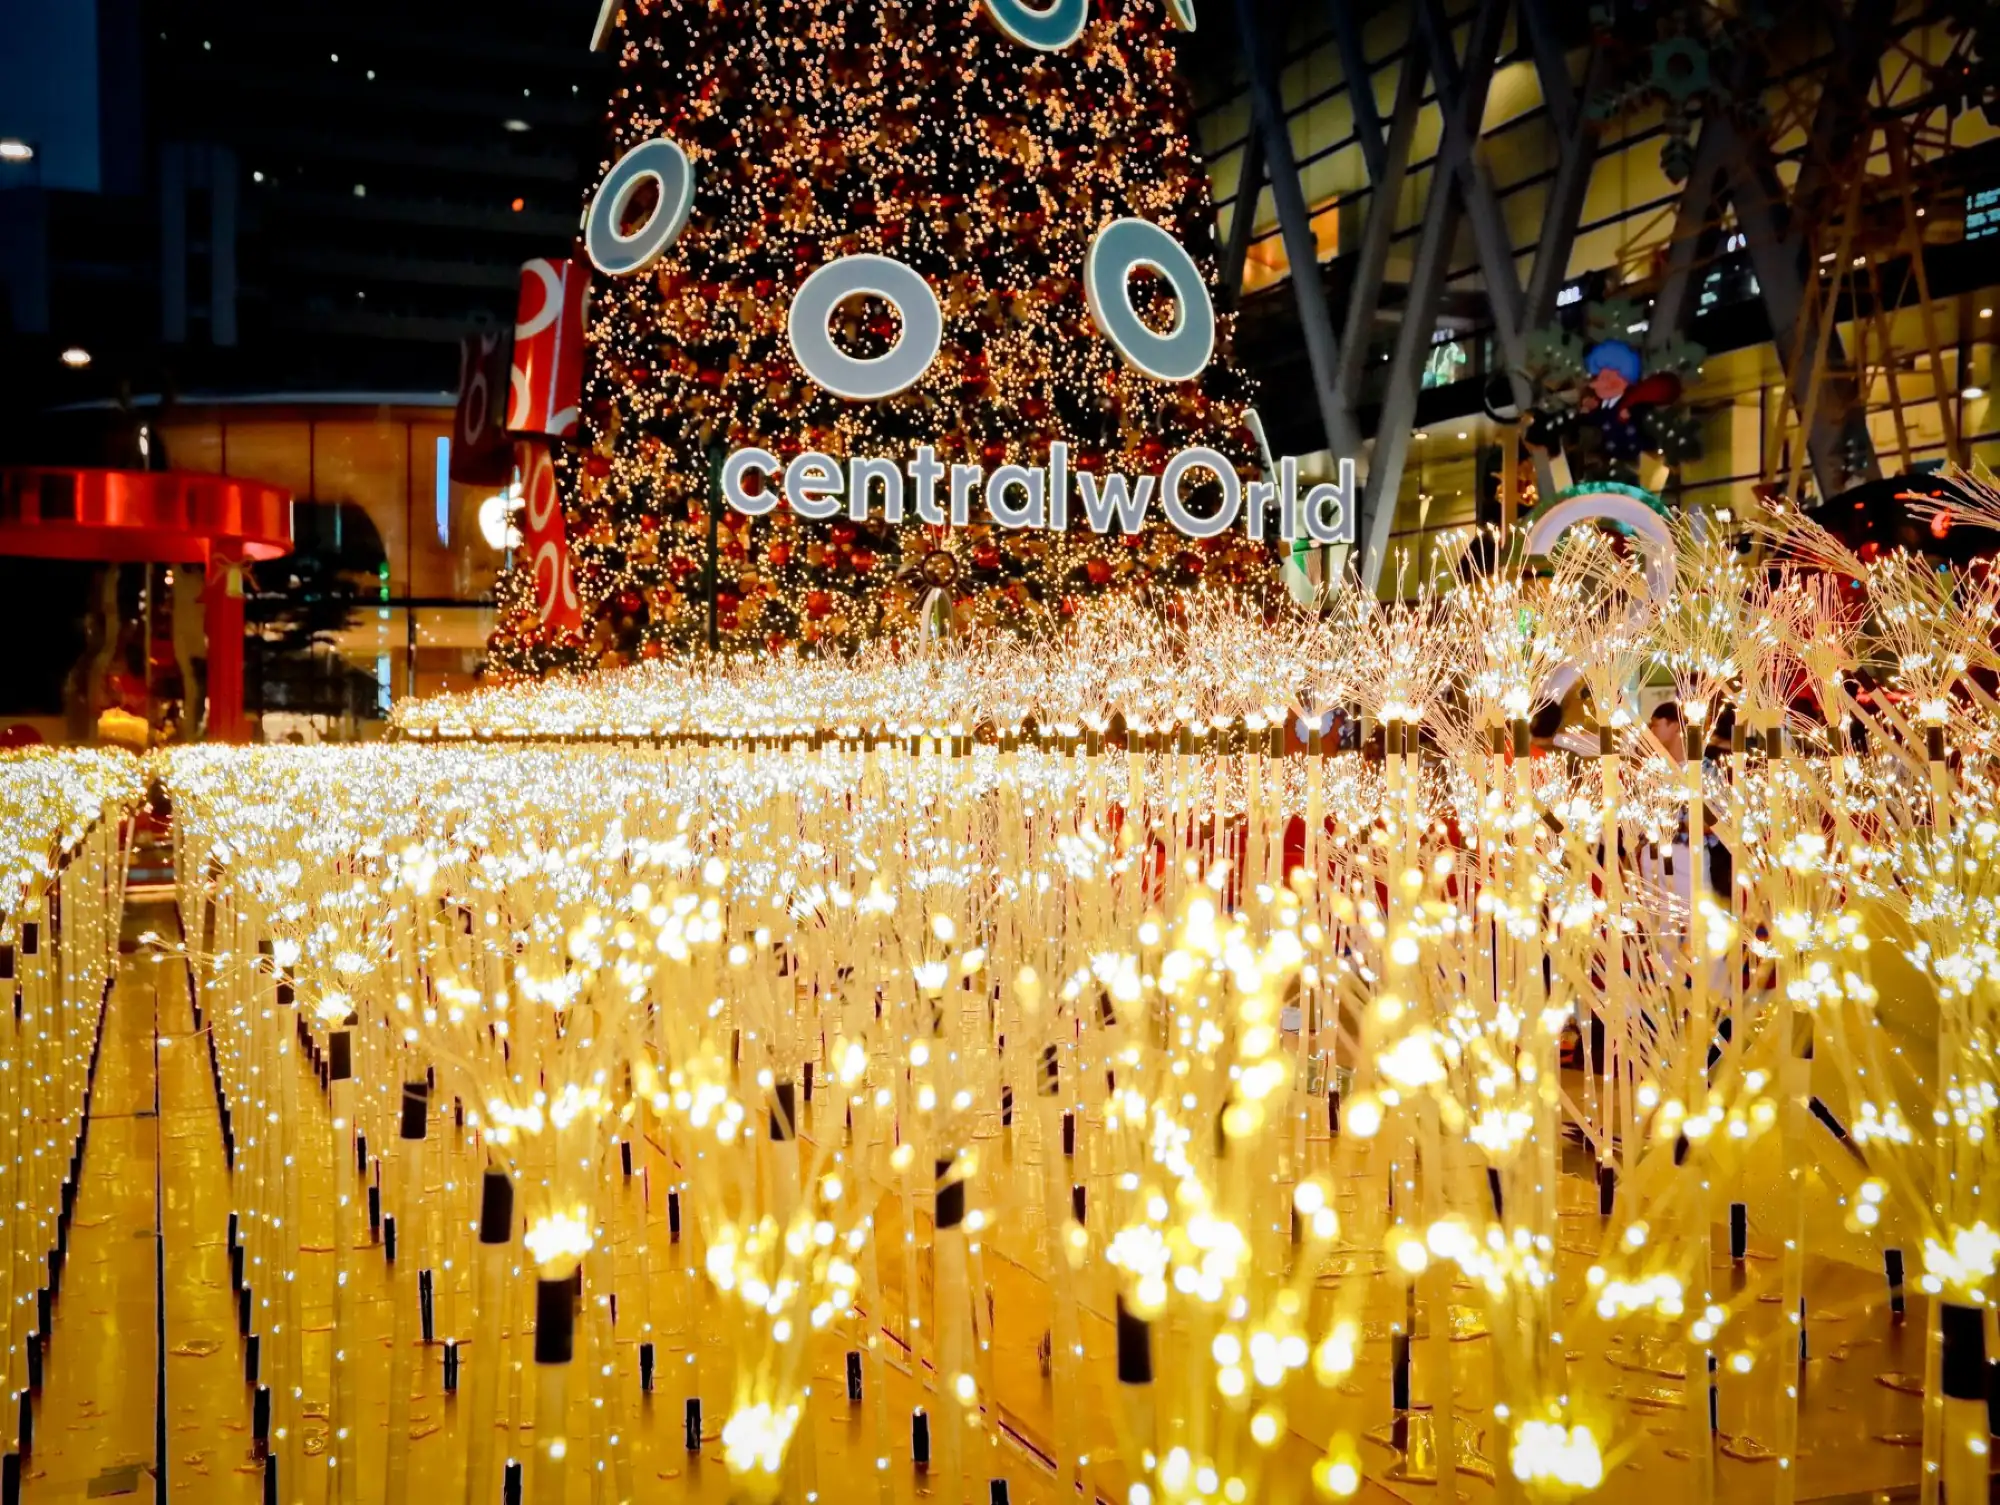 曼谷centralwOrld聖誕節佈景採用數十萬個蒲公英燈光作為點亮幸福之光（圖片來源：centralwOrld官方粉專）